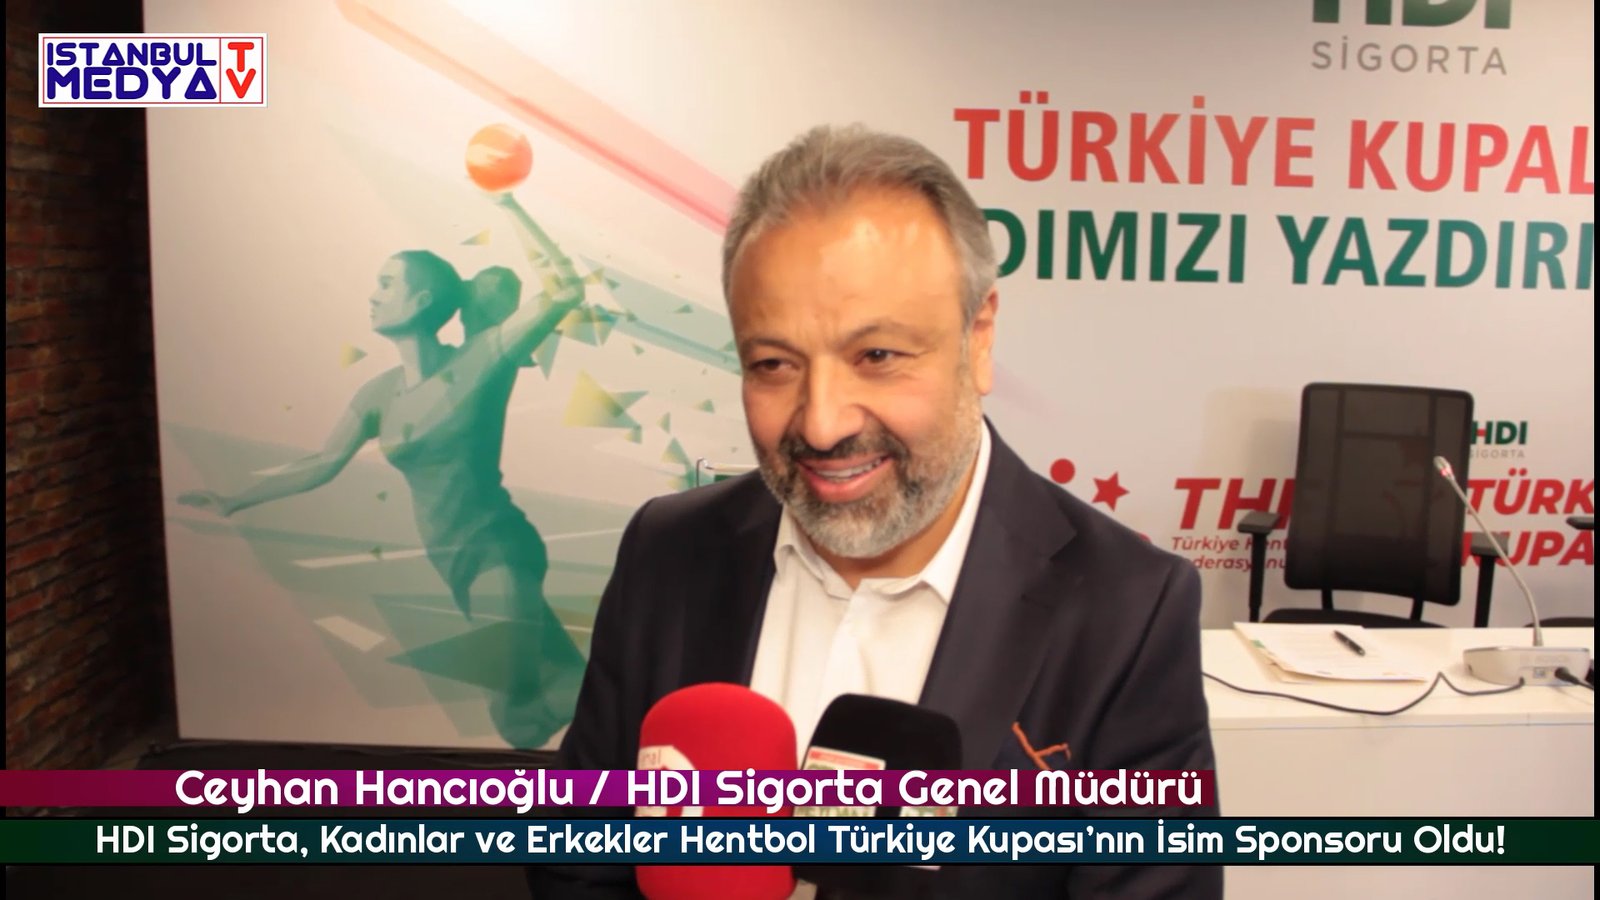 HDI Sigorta Genel Müdürü Ceyhan Hancıoğlu / HDI Sigorta, Hentbol Türkiye Kupası’nın İsim Sponsoru Oldu!